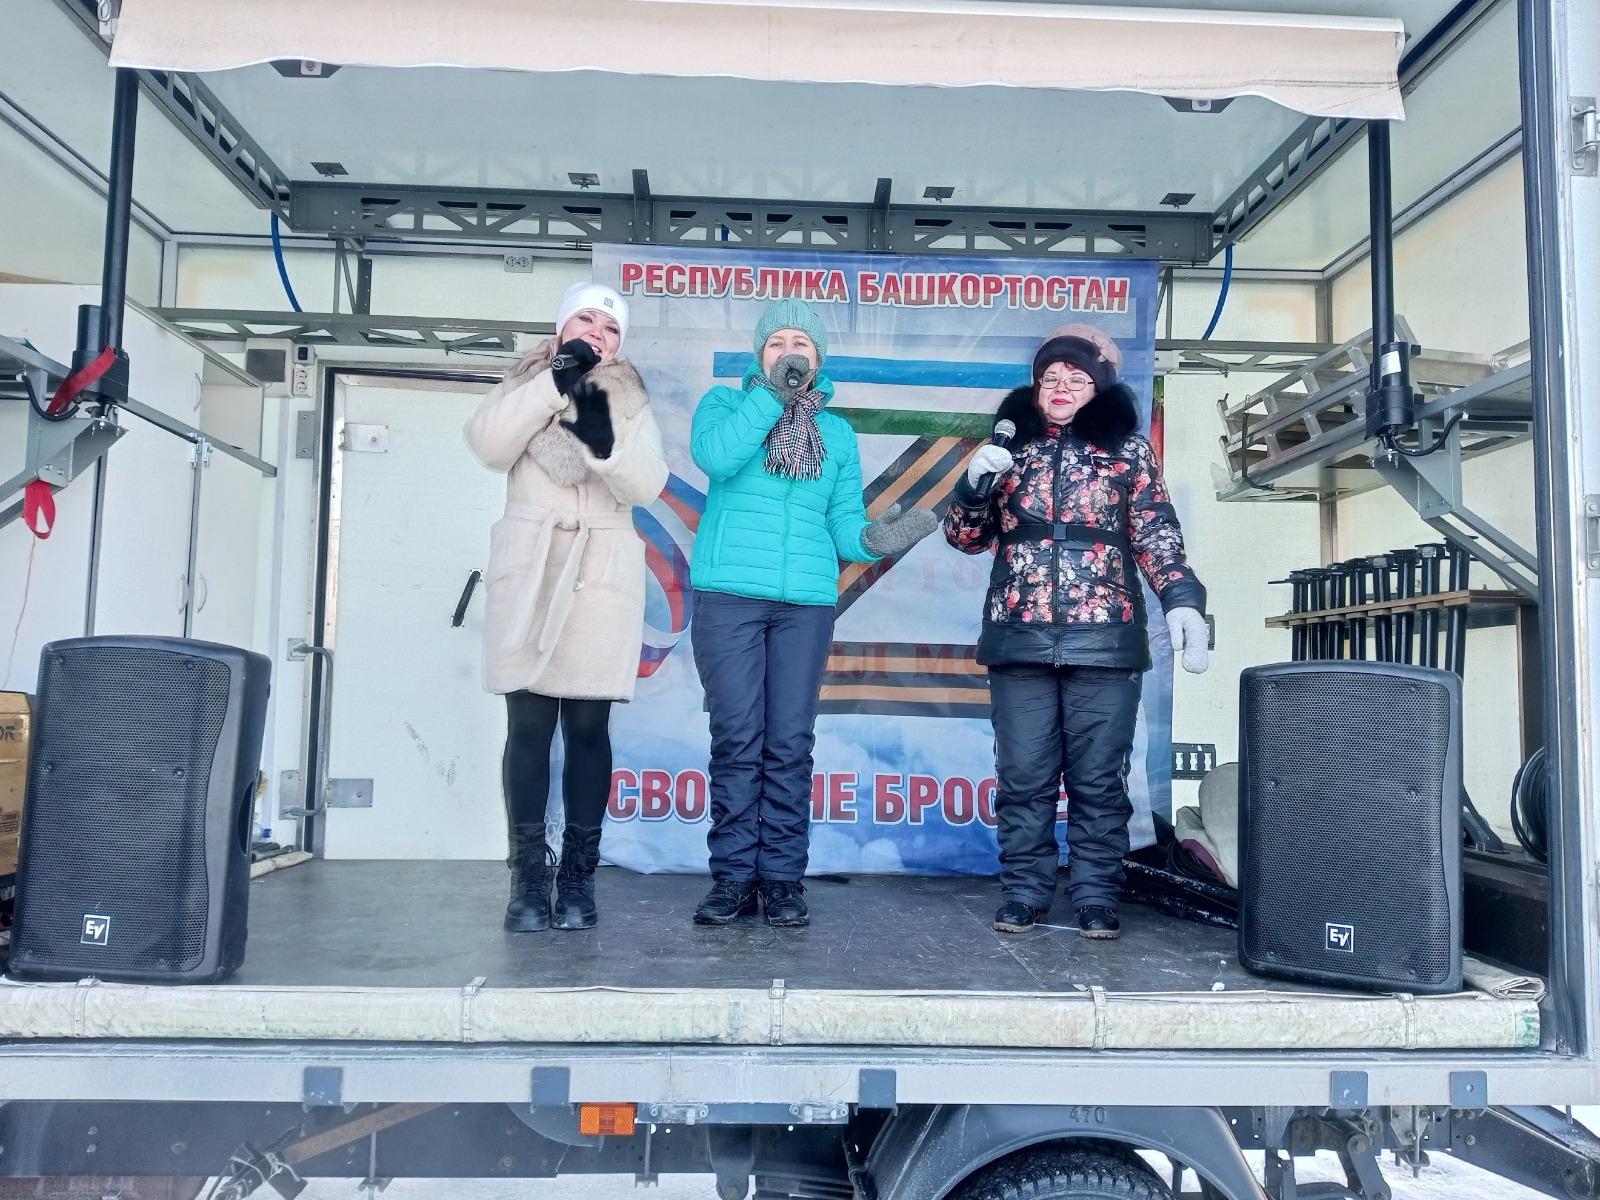 Артисты автоклуба Стерлитамакского района свои выступления посвятили защитникам Отечества